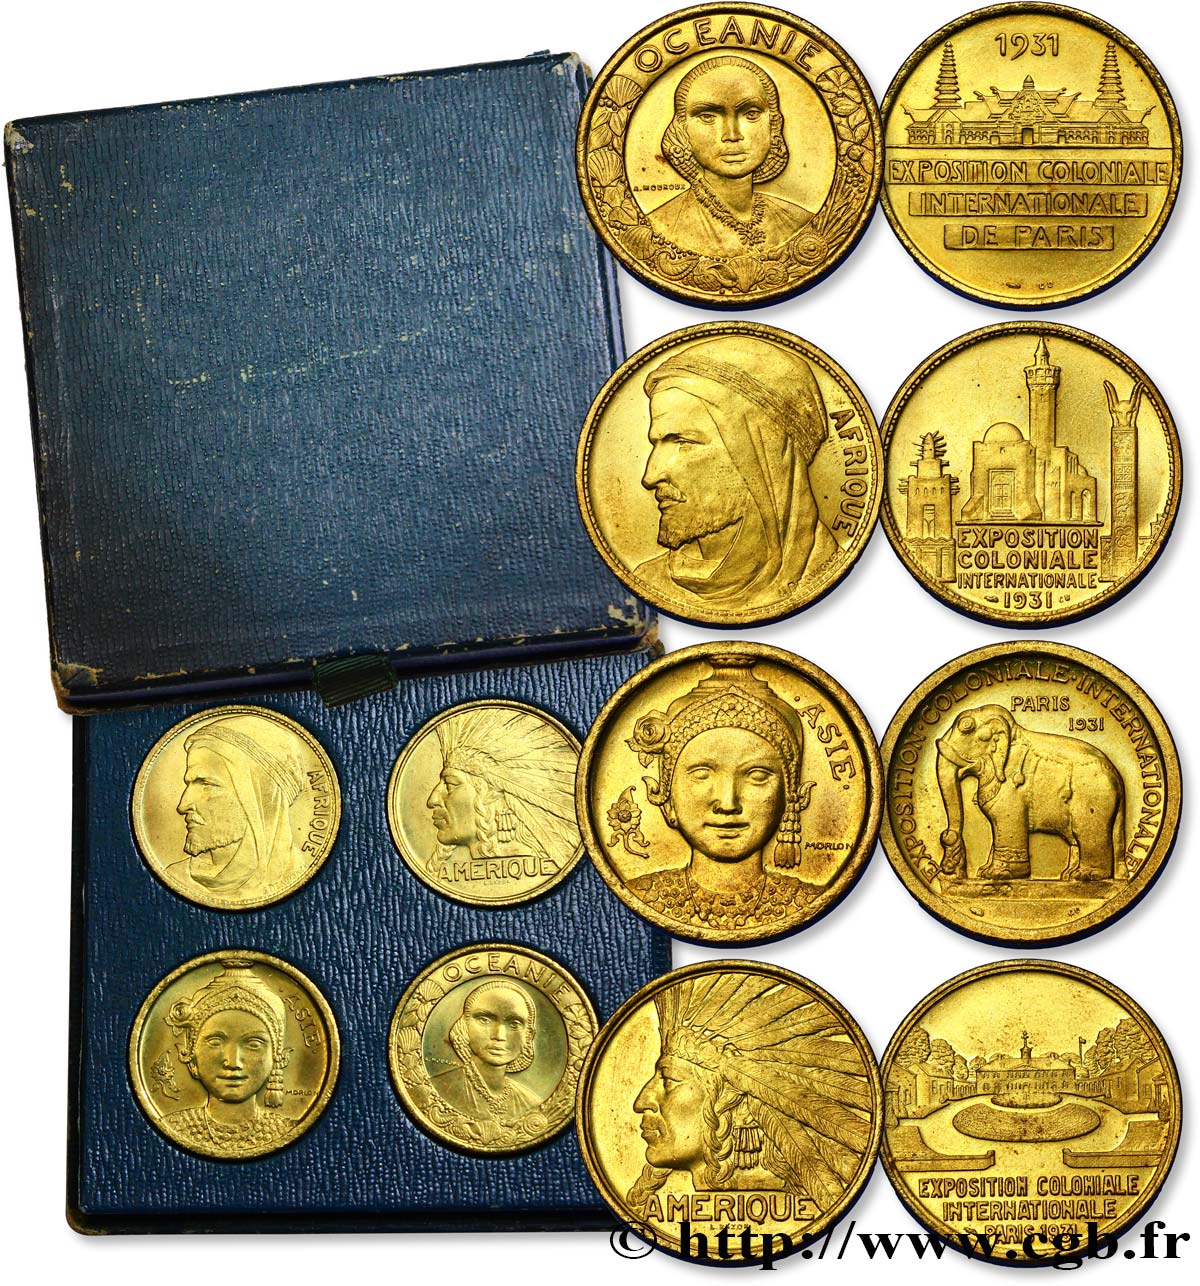 FRANZÖSISCHE KOLONIEN Coffret 4 médailles Exposition Coloniale Internationale 1931 Paris fST 